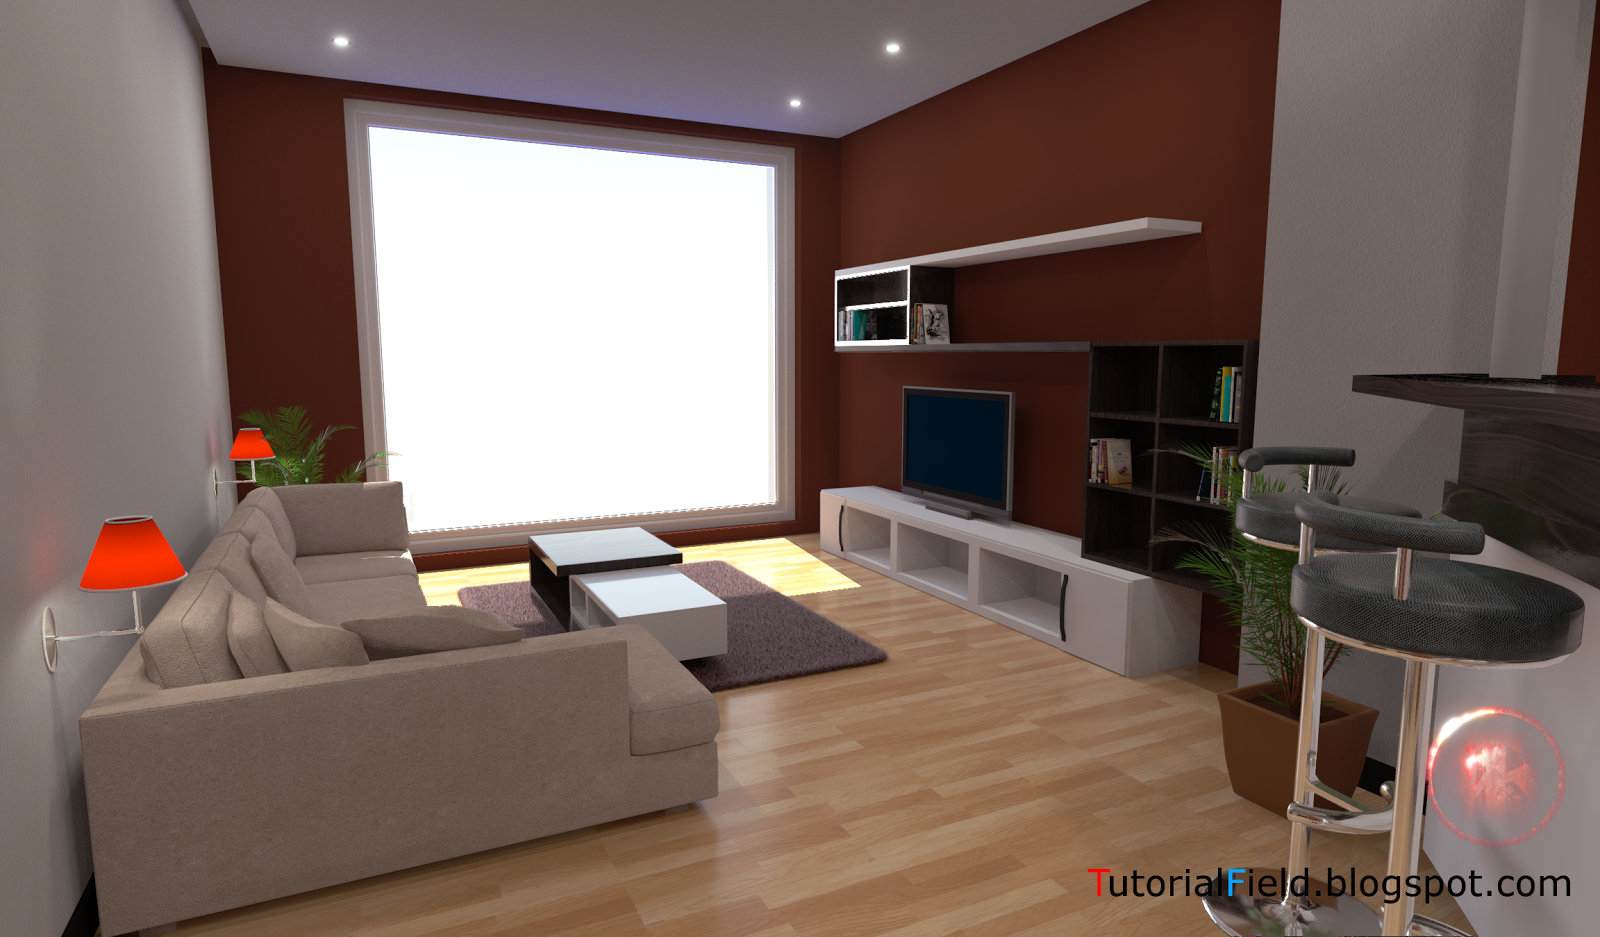 TutorialField.blogspot.com: Blender 3D - Interior Design (experimental ...